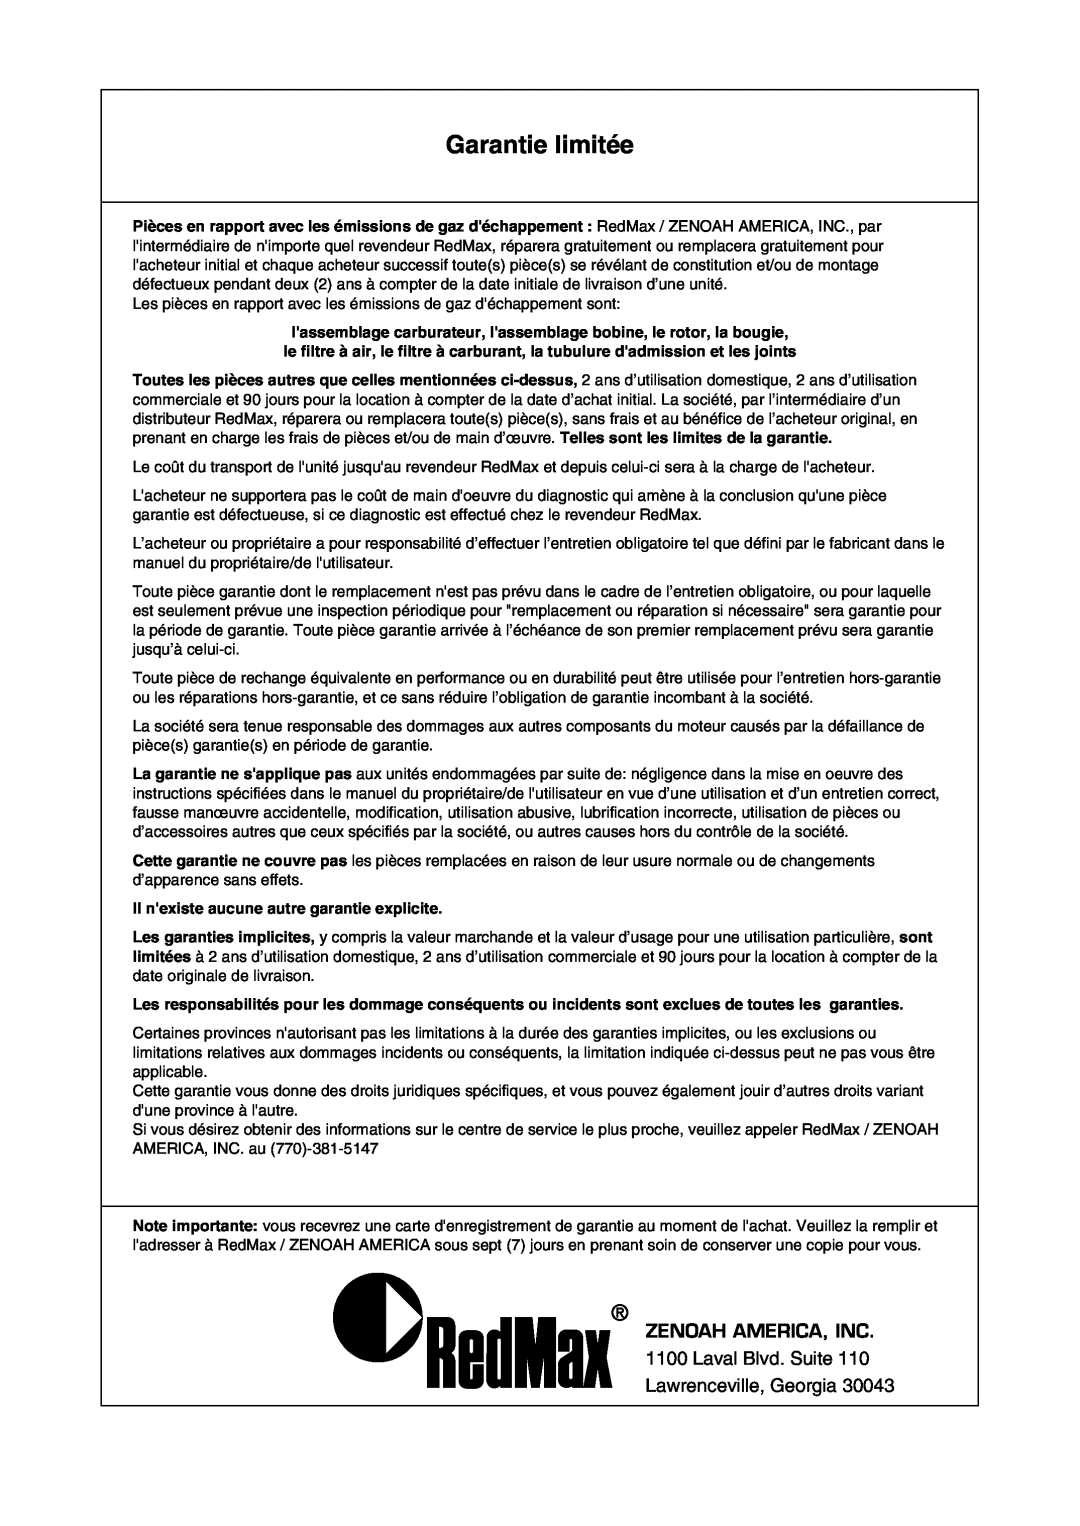 Zenoah PSZ2401 manual Garantie limitée, Zenoah America, Inc, Il nexiste aucune autre garantie explicite 